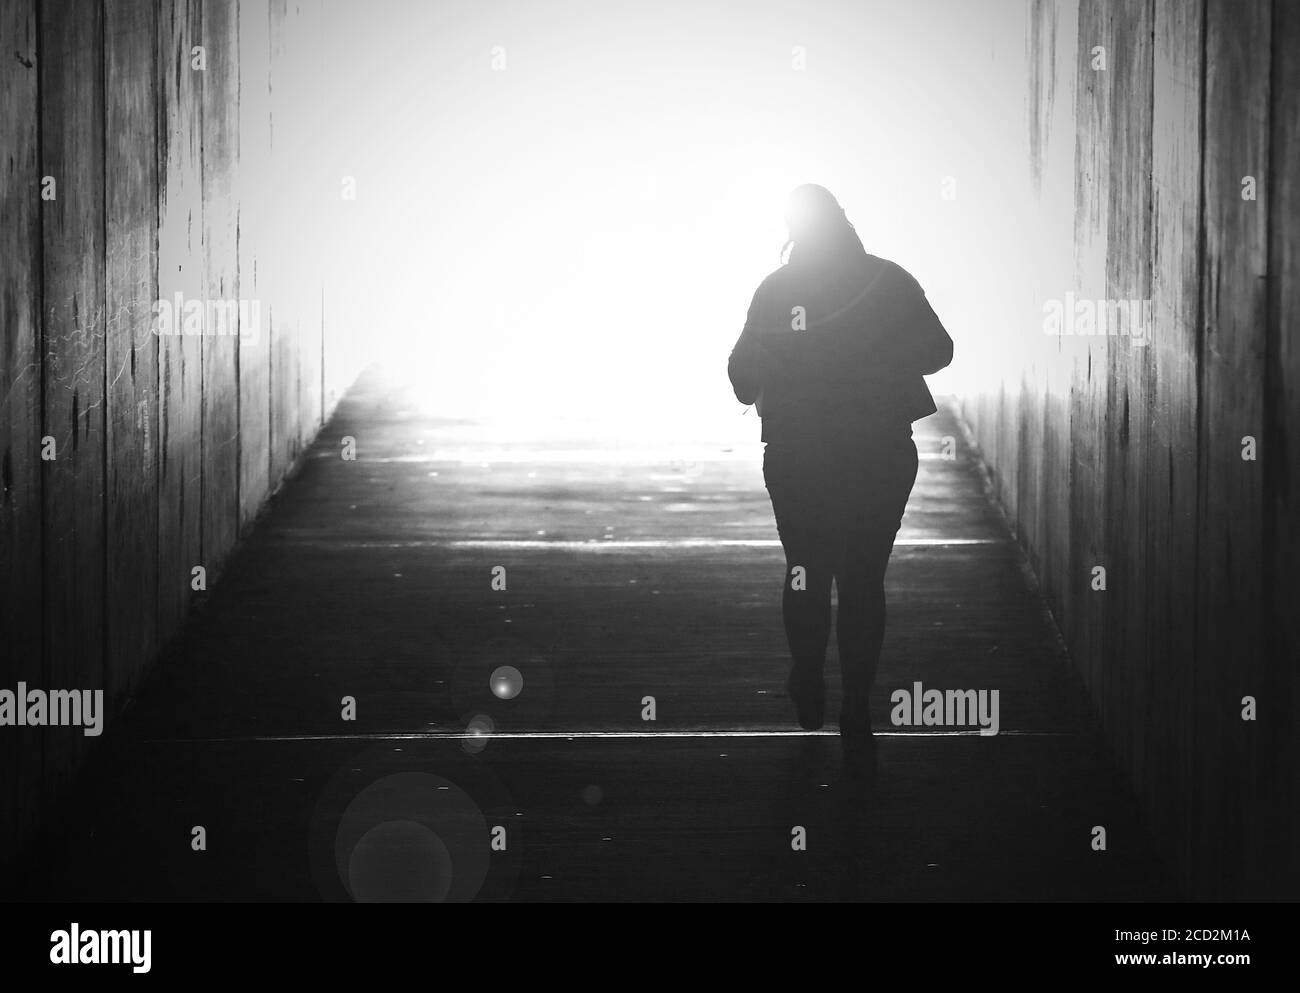 Schwarz-Weiß-Bild einer alleinstehenden Frau, die verschwindet und auf ein helles Licht am Ende eines Tunnels zugeht. Selbstmord, Tod sterben verloren geliebt Stockfoto